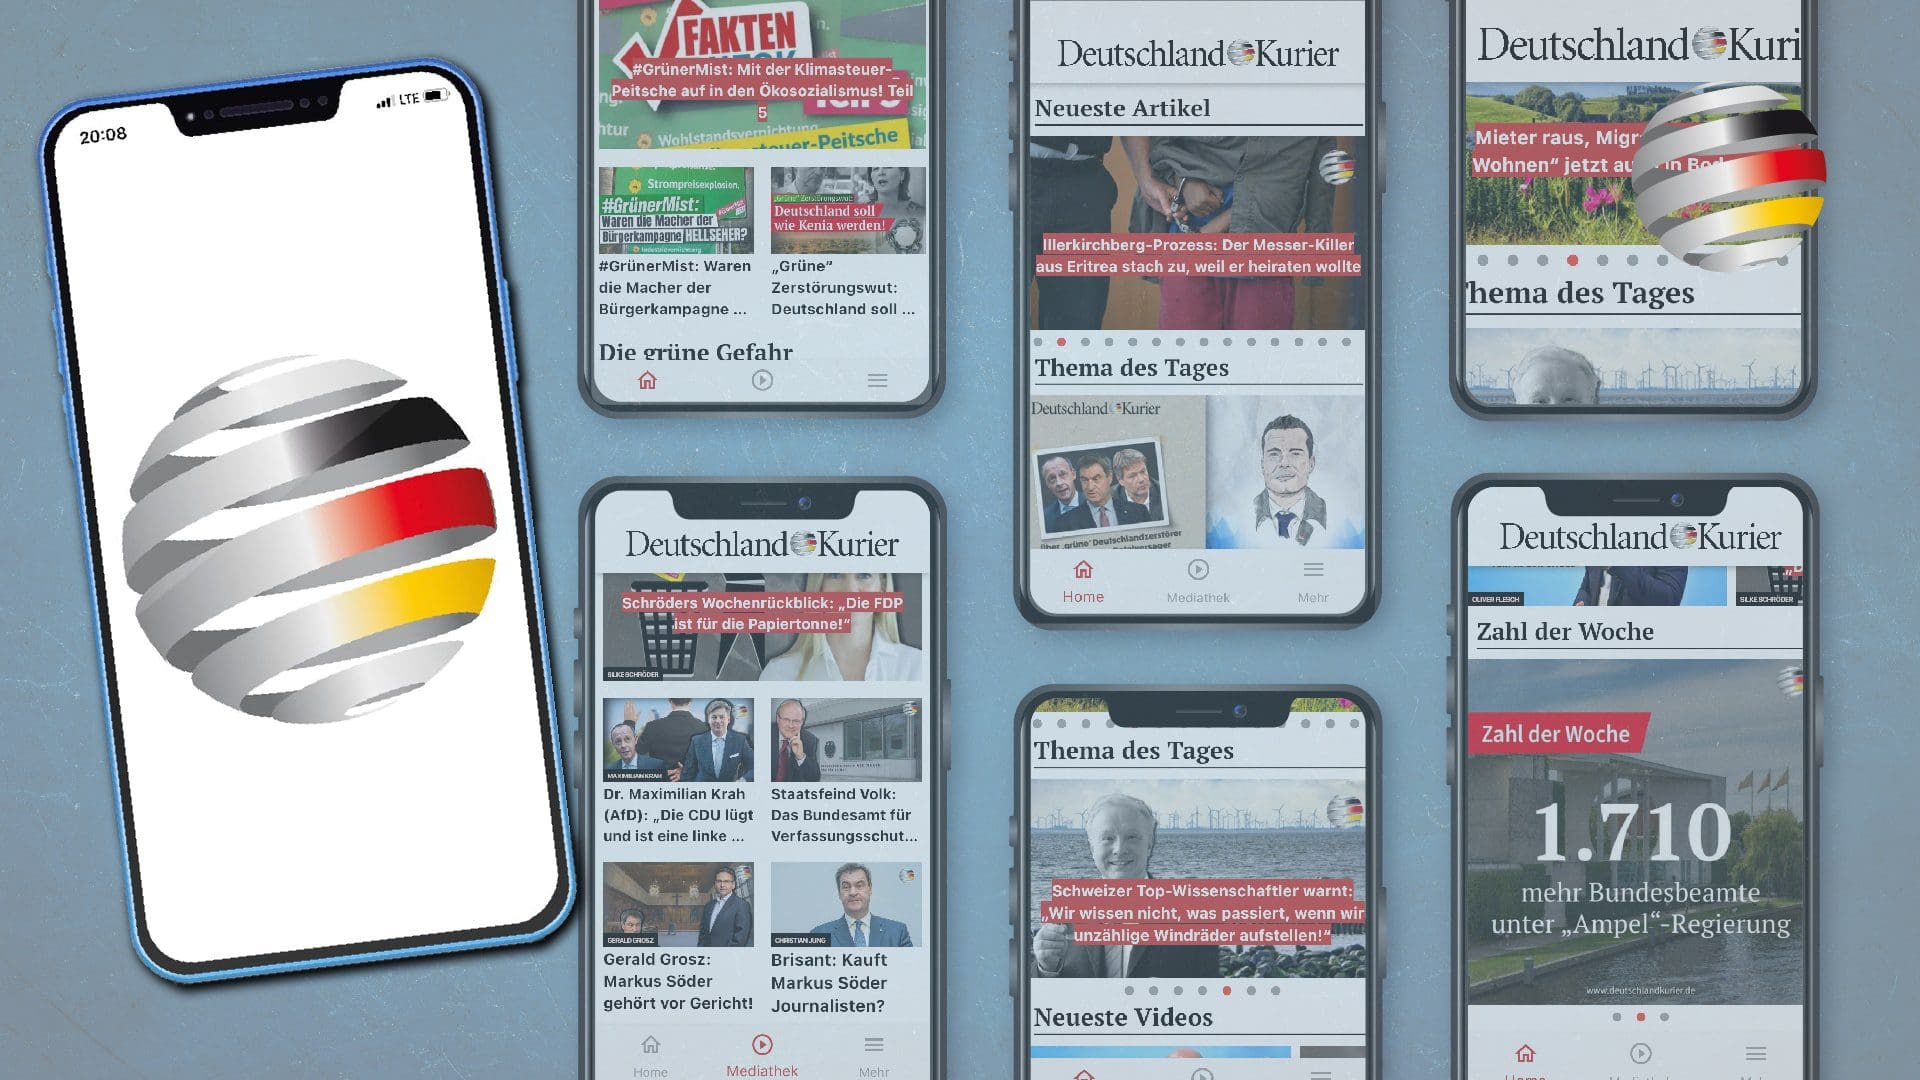 deutschland-kurier-ab-sofort-auch-per-app-verfugbar-downloaden-und-loslegen